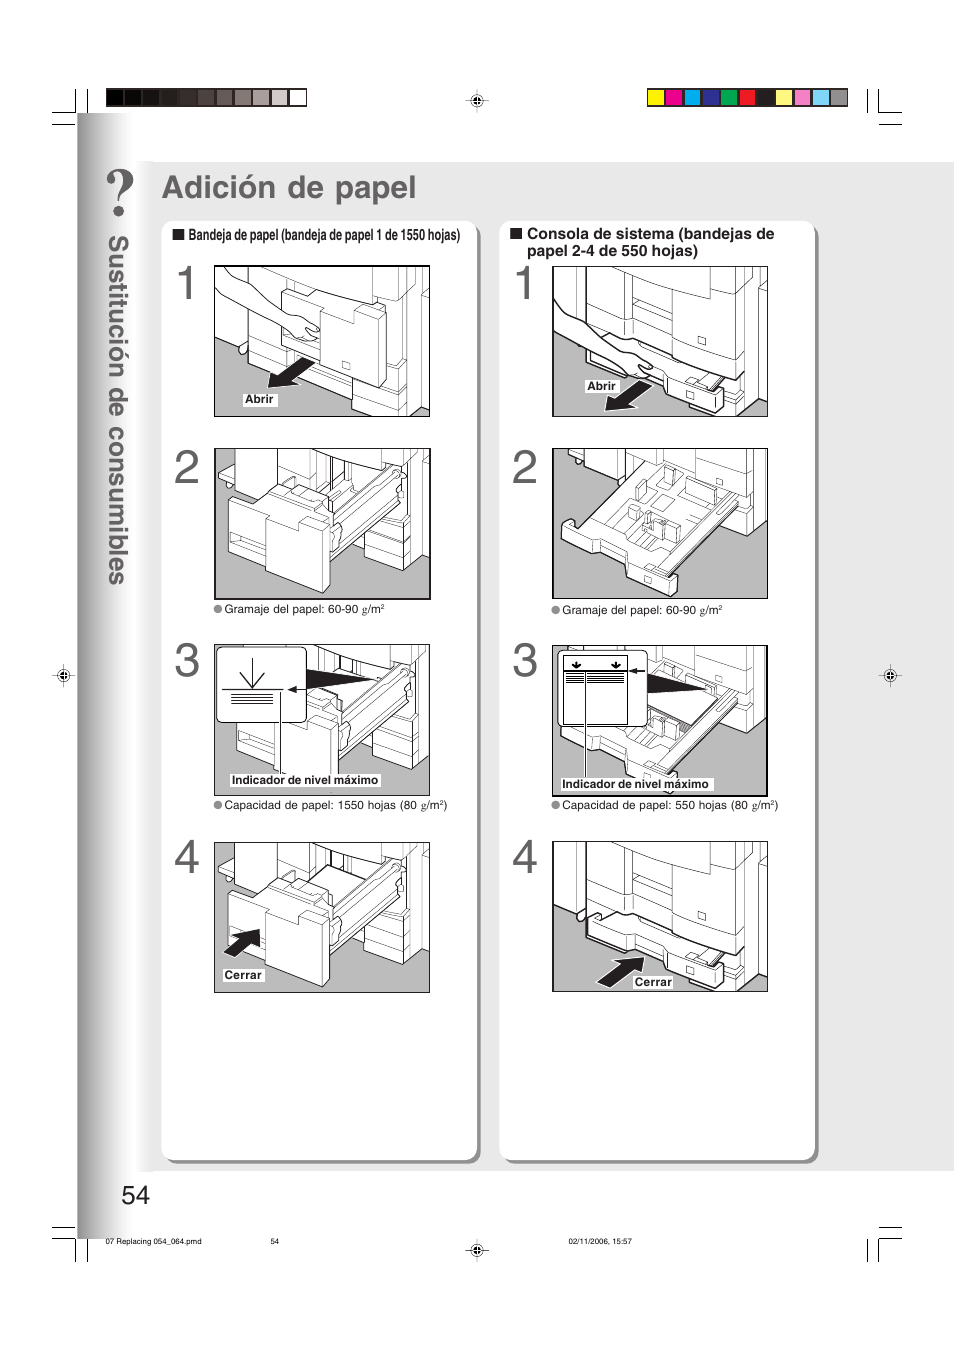 Sustitución de consumibles, Adición de papel, 54 y 55) | Sustitución de consumibles 54 | Panasonic DP8045 Manual del usuario | Página 54 / 84